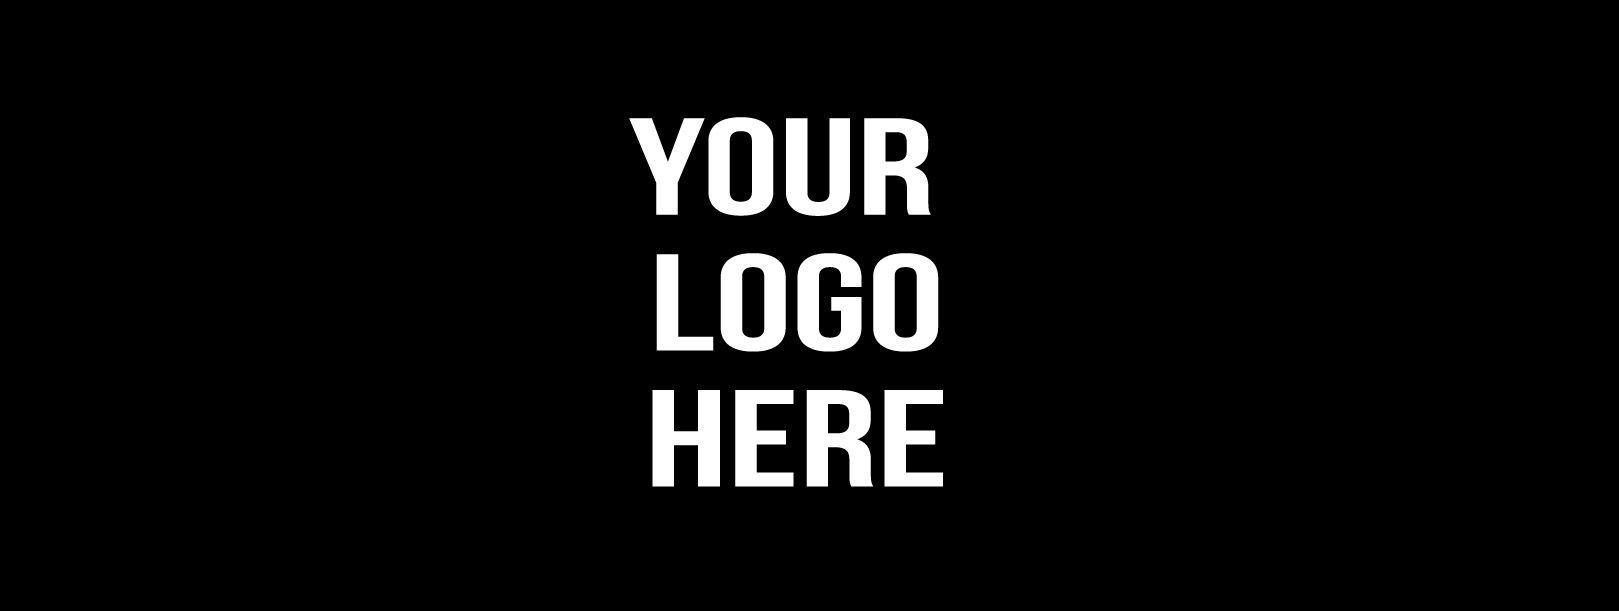 Black Design Logo - Customised Any Logo Text Black Design bar runner great for home bar